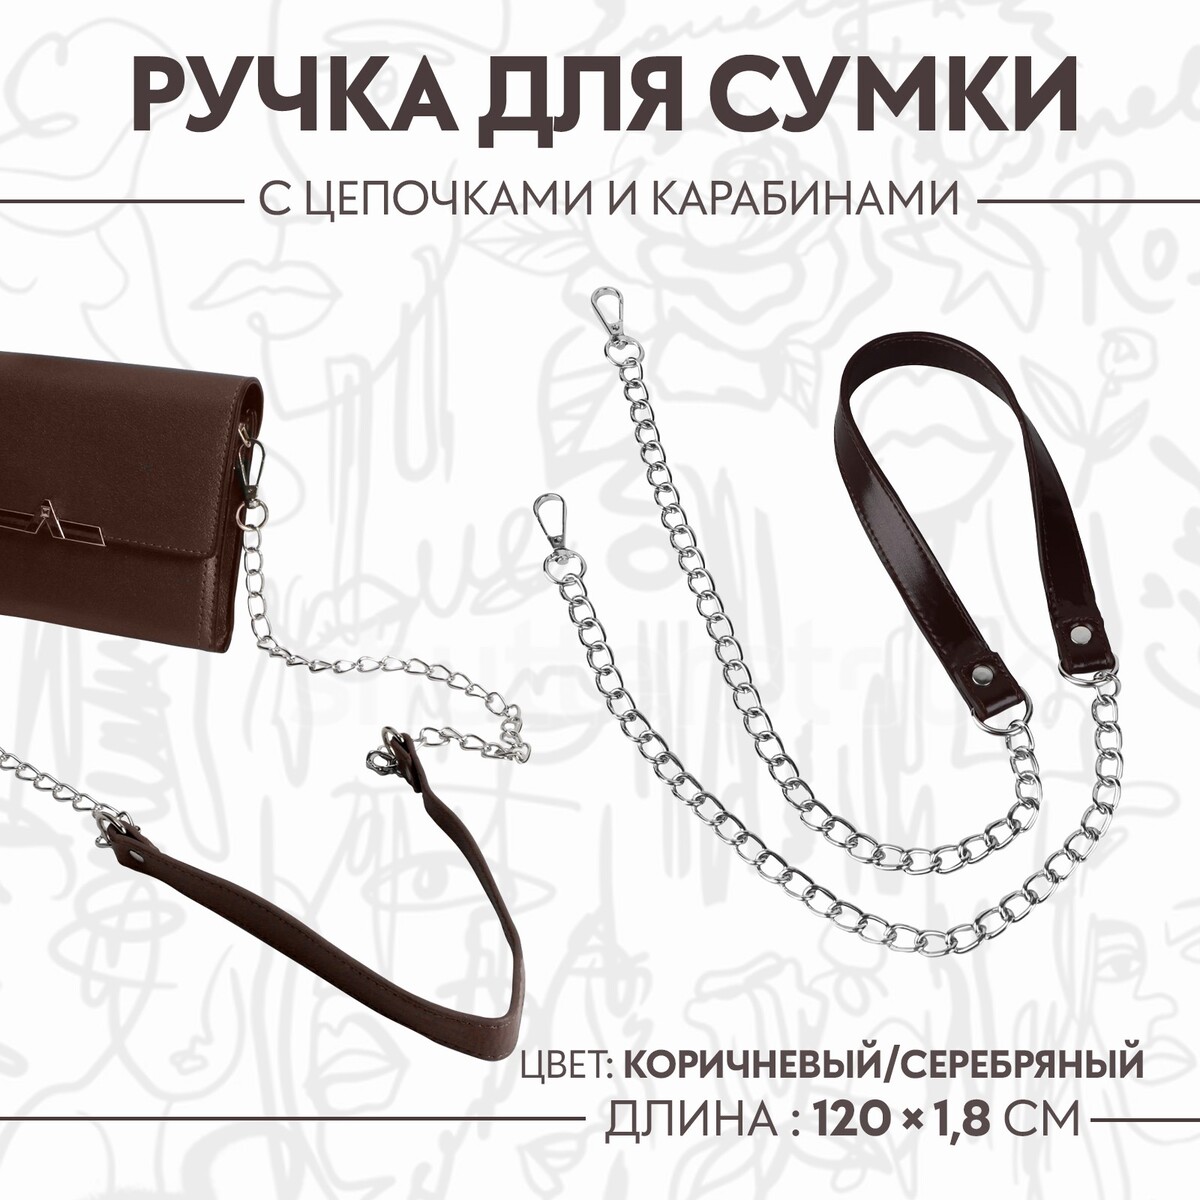 Ручка для сумки, с цепочками и карабинами, 120 × 1,8 см, цвет коричневый ручка для сумки с цепочками и карабинами 120 × 1 8 см